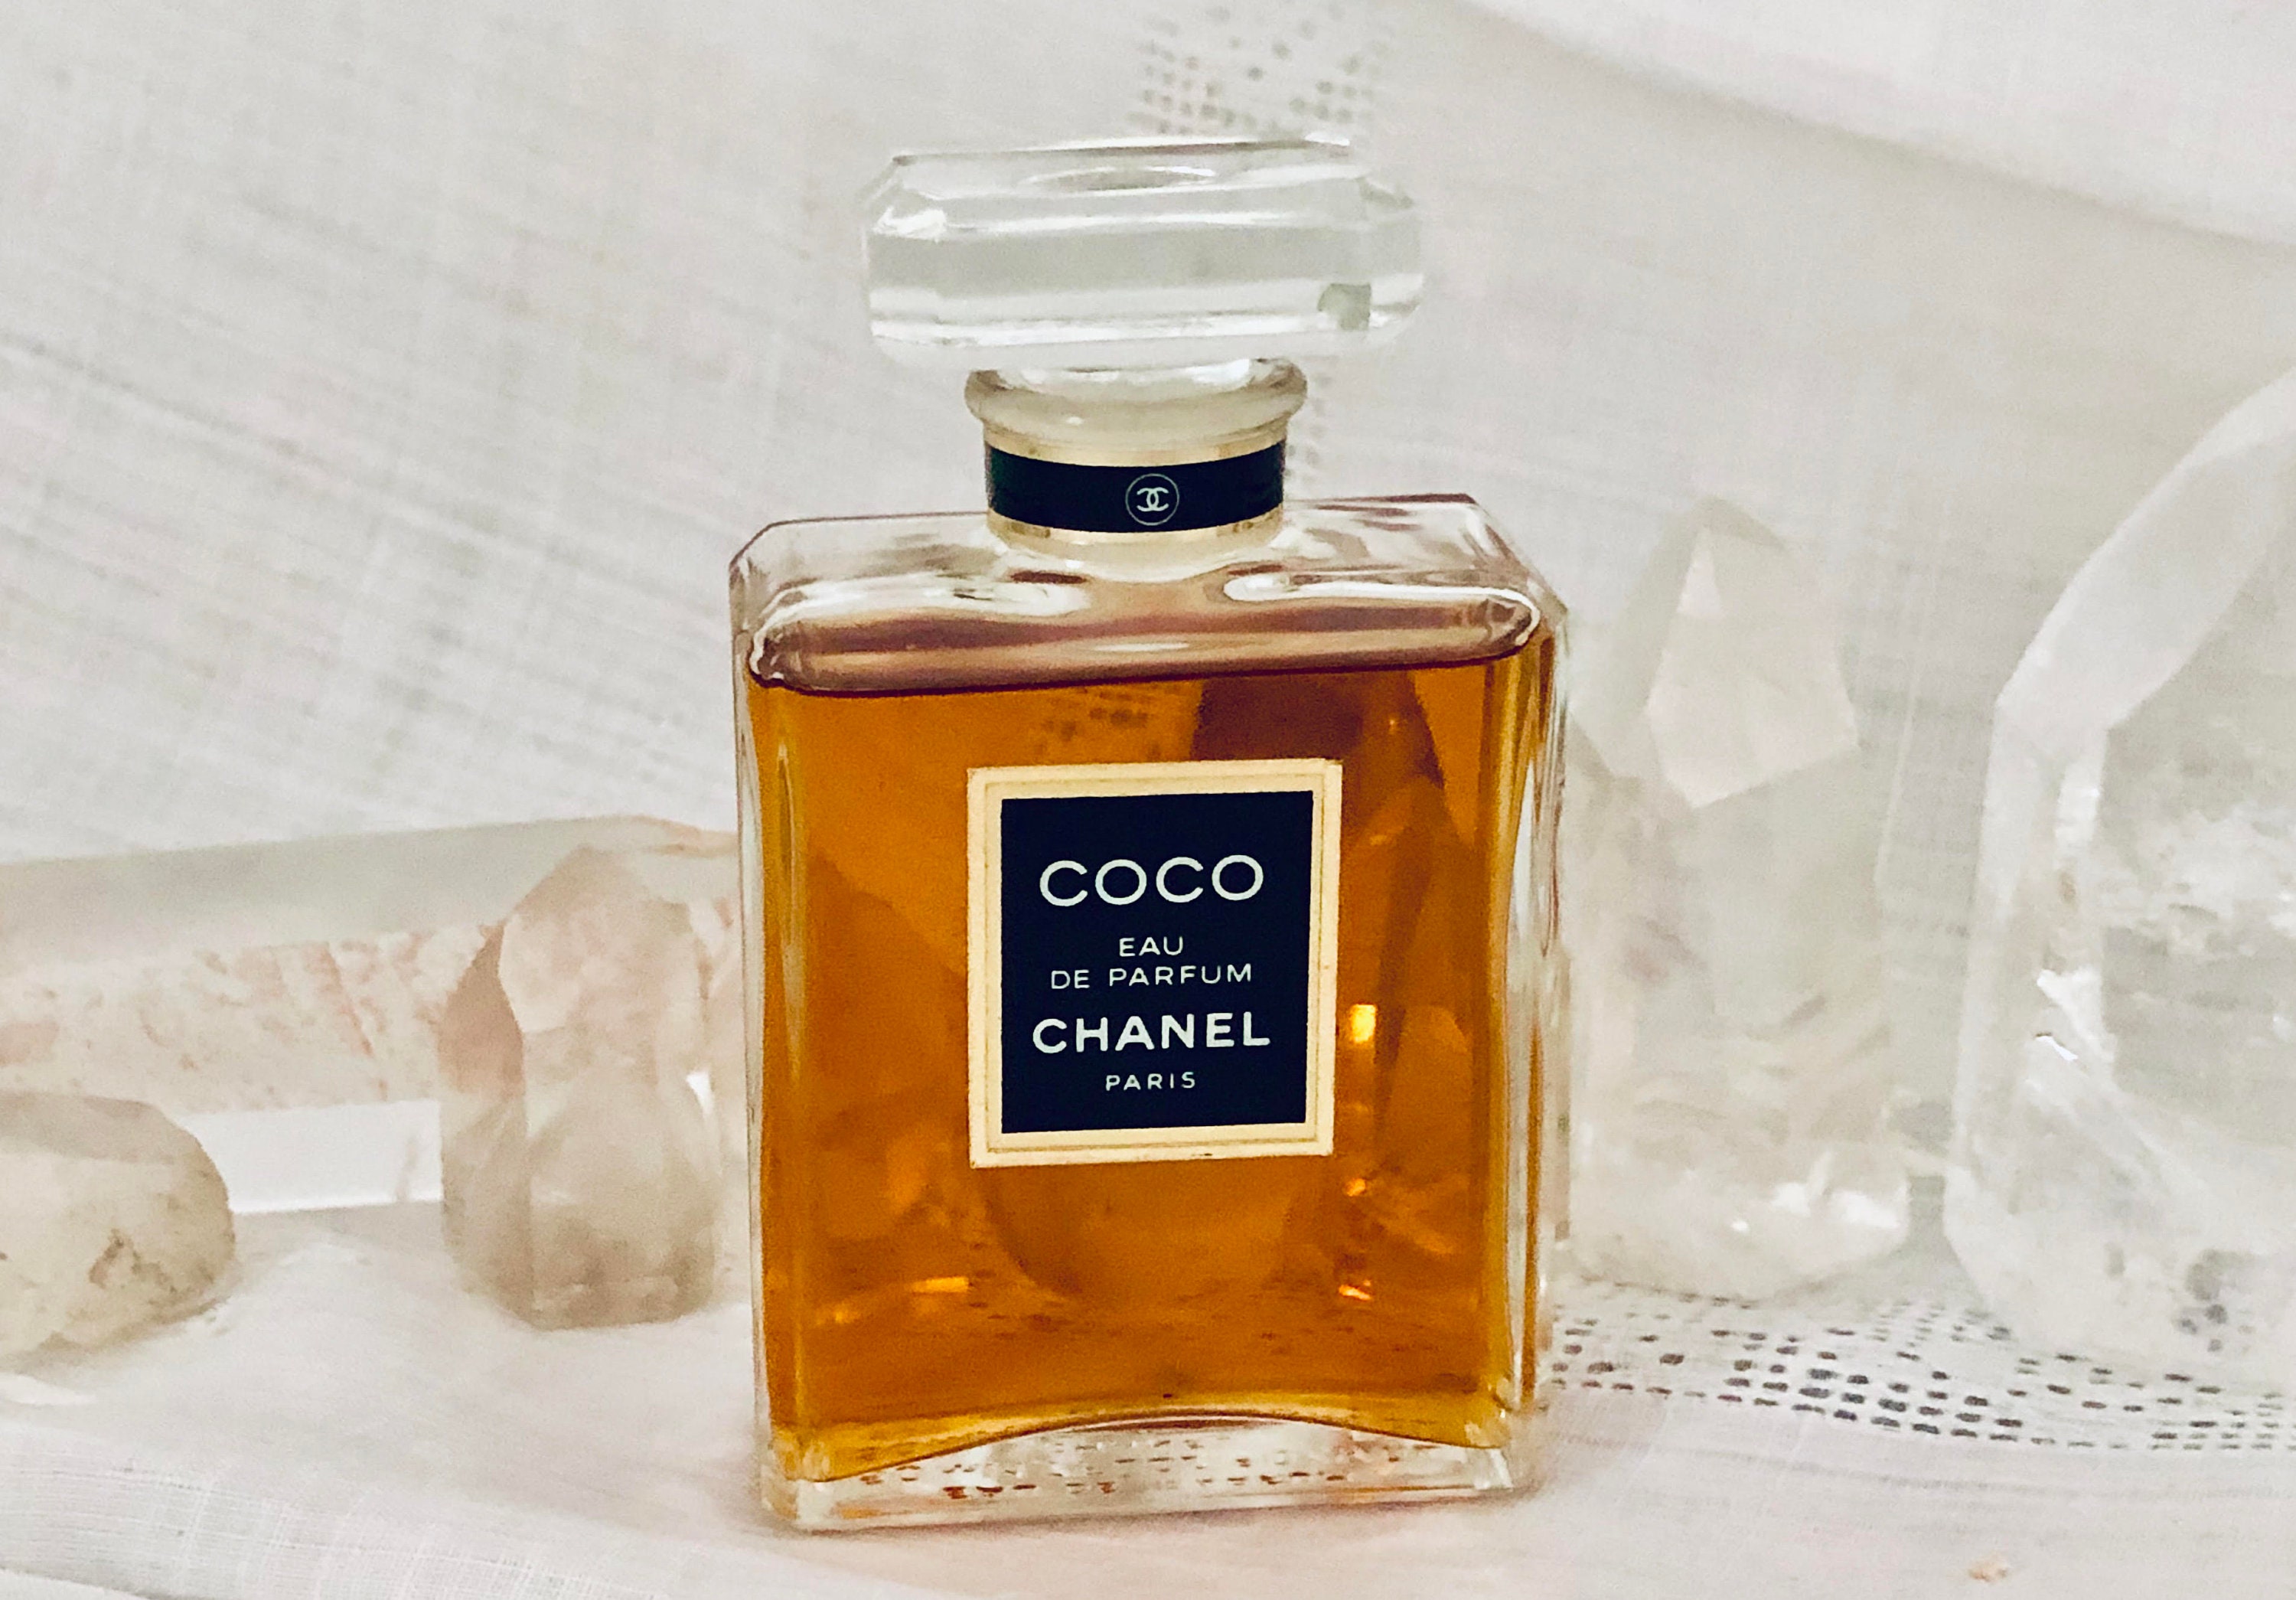 Rafflesia Arnoldi Akvarium kvarter Chanel Coco 50 Ml. 1.76 Oz. Flacon Eau De Parfum 1984 - Etsy